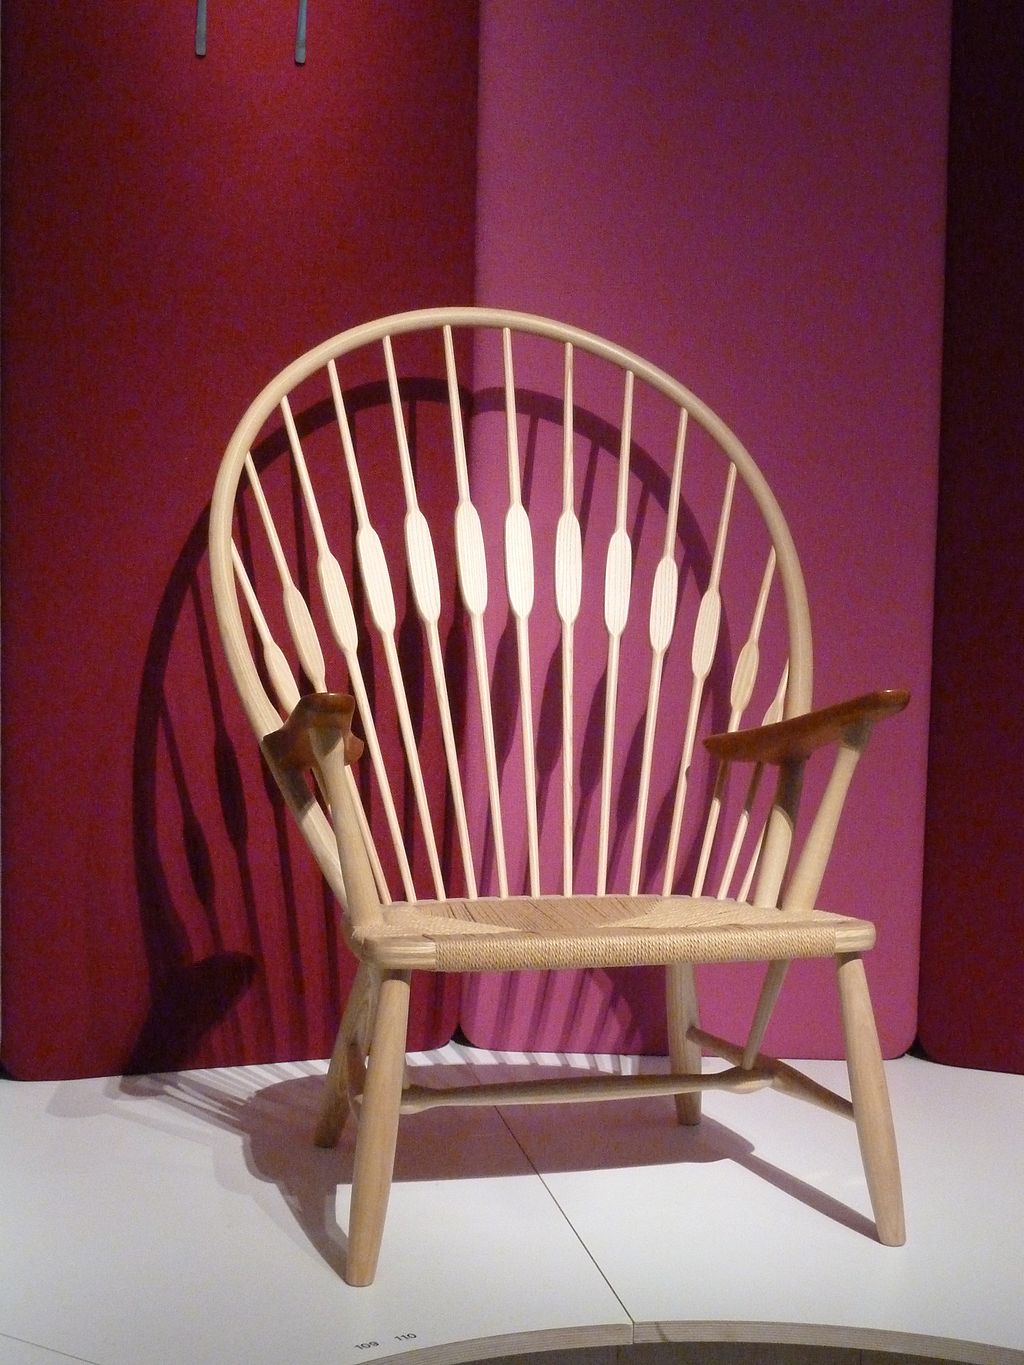 孔雀椅设计博物馆丹麦。jpg